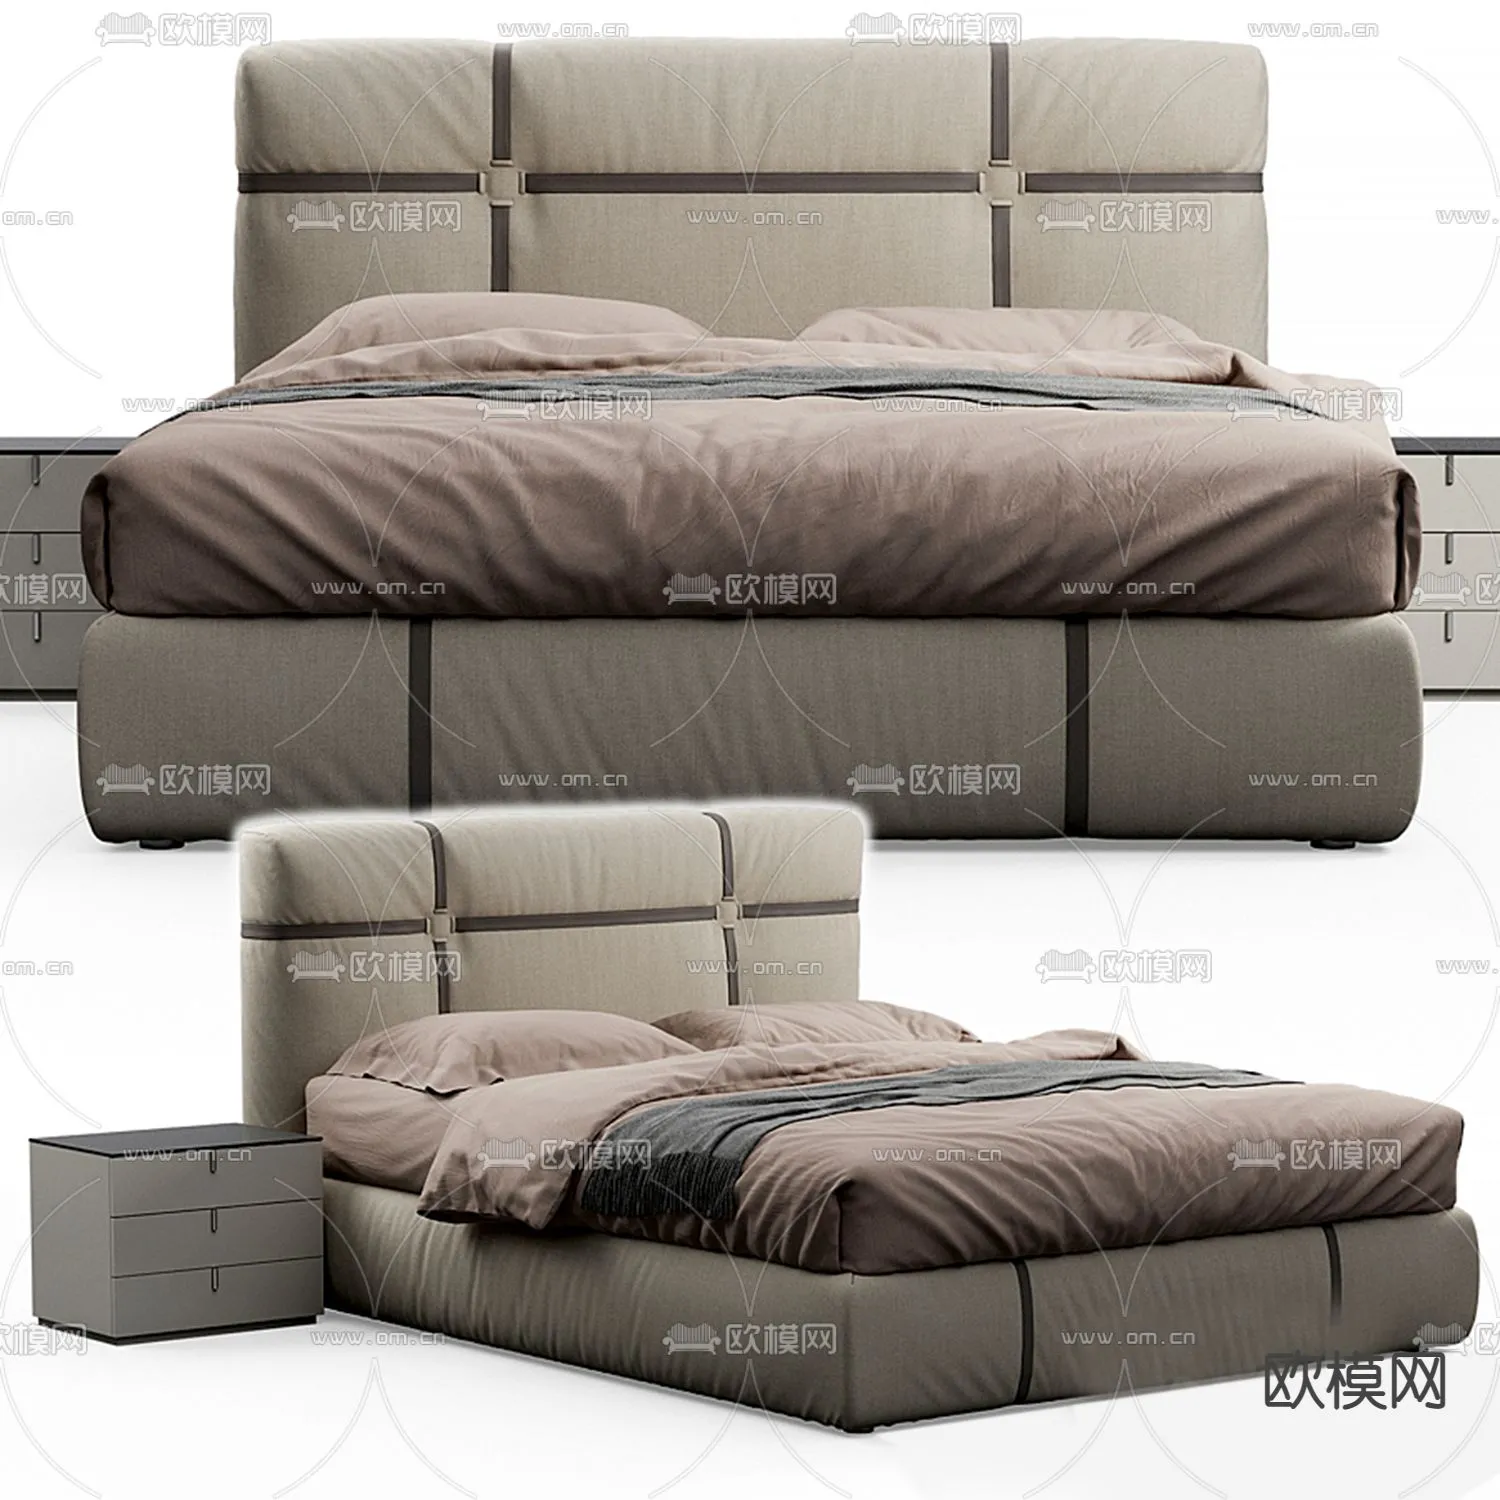 MINOTTI BED – 3DSMAX MODEL – 012